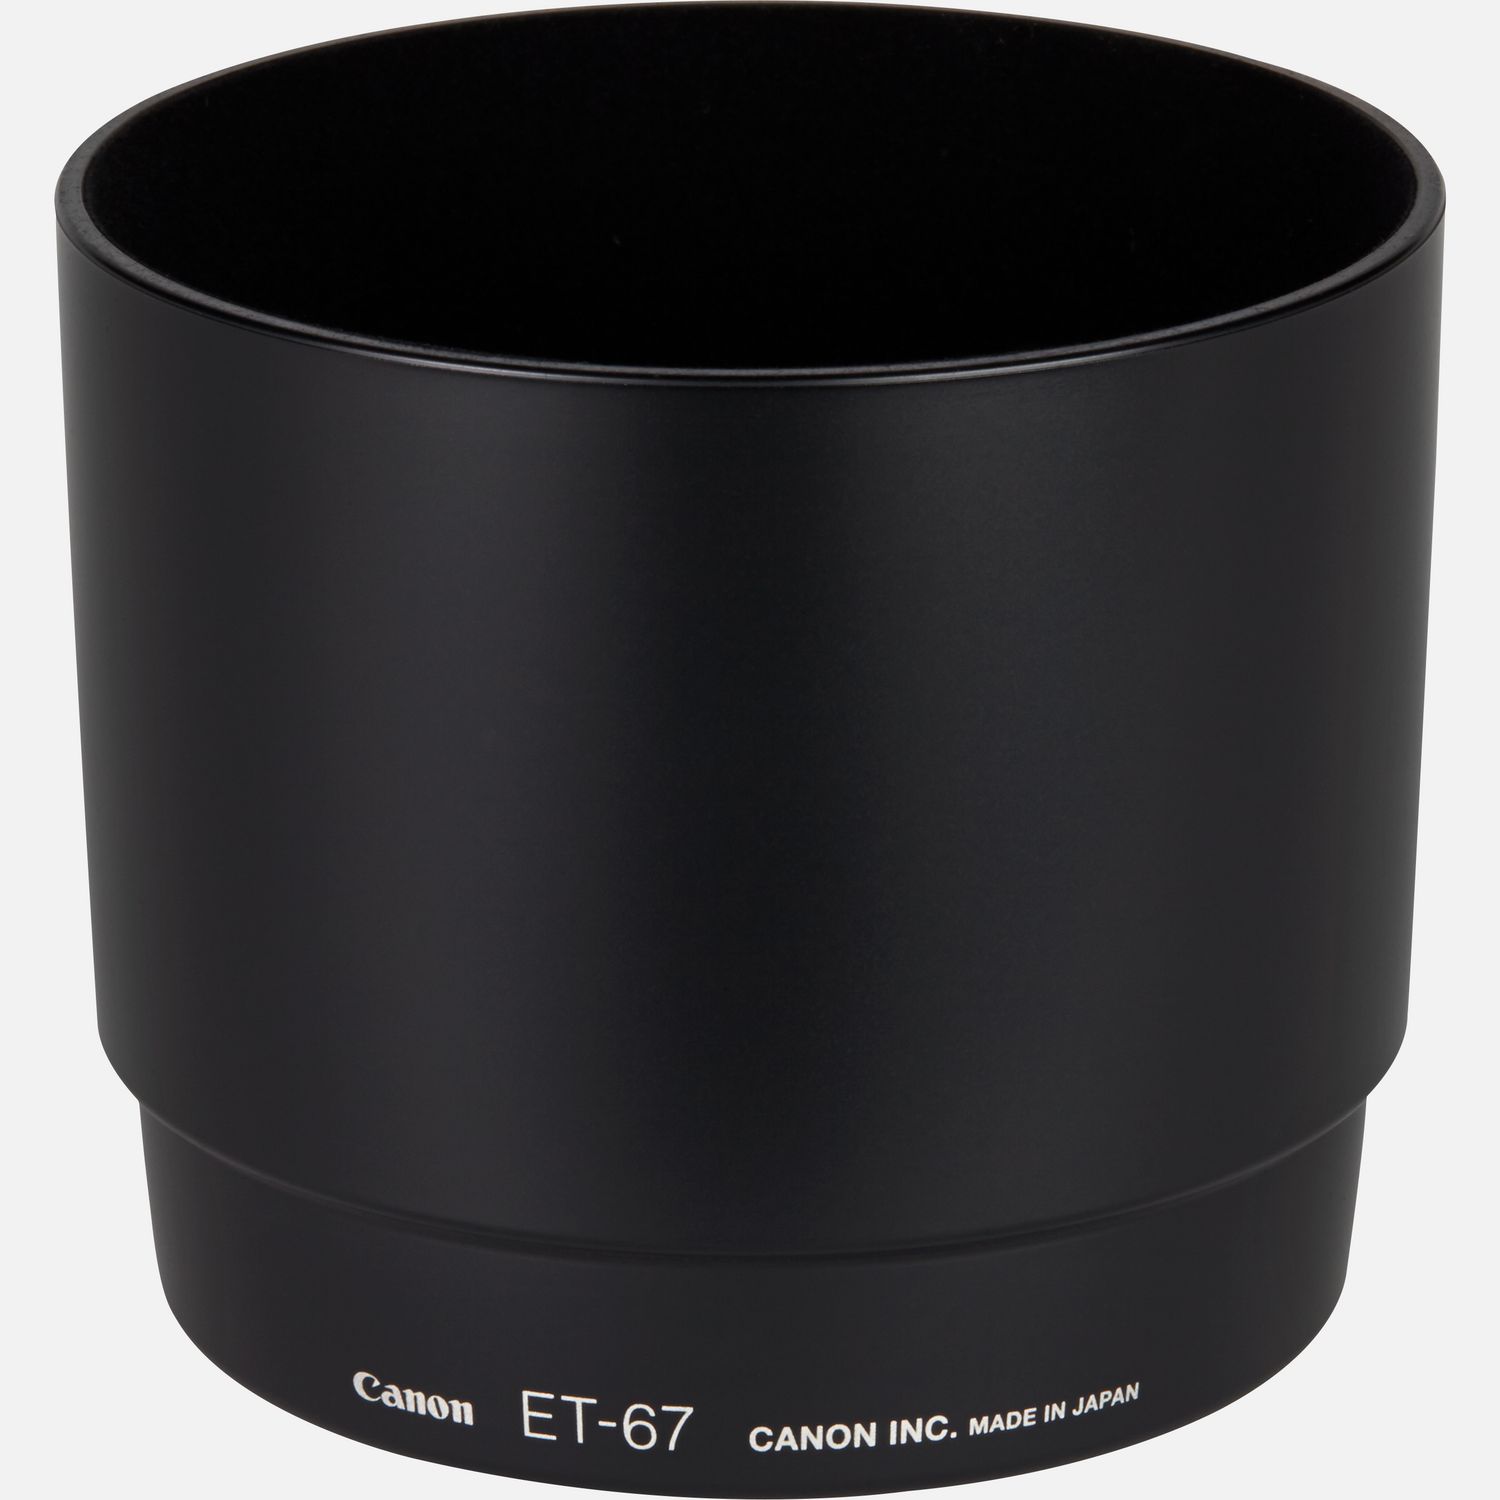 Passt auf das Objektiv EF 100mm 1:2,8 Makro USM, reduziert Reflexionen, die durch direkt auf die Frontlinse auffallendes Licht hervorgerufen werden.      Kompatibilitt       EF 100mm f/2.8 Macro USM